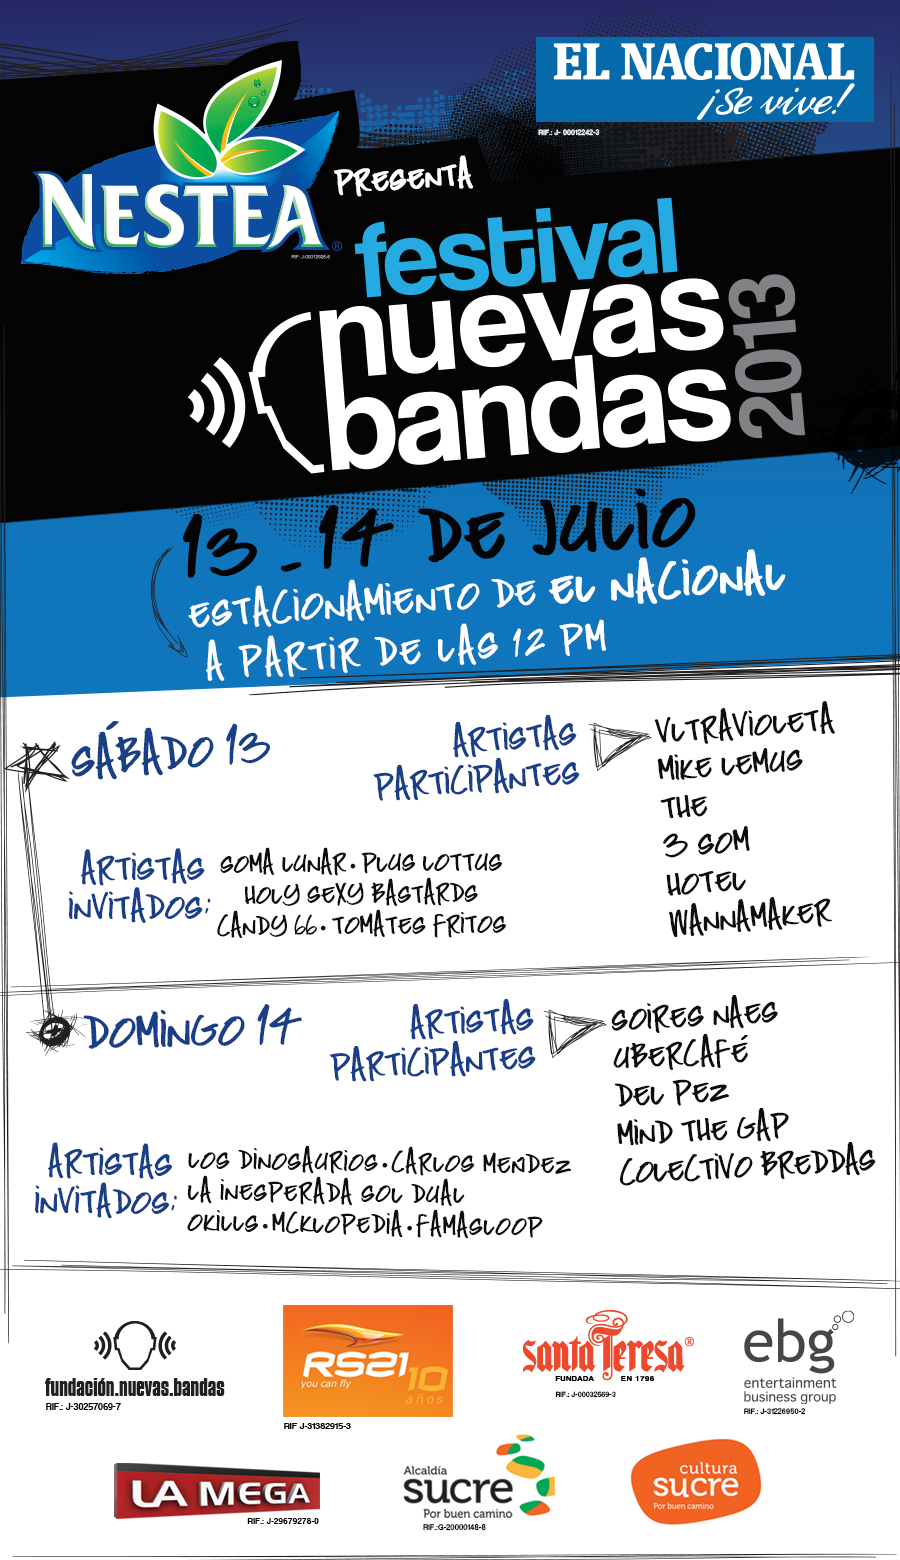 Revelado el cartel oficial del Festival Nuevas Bandas 2013